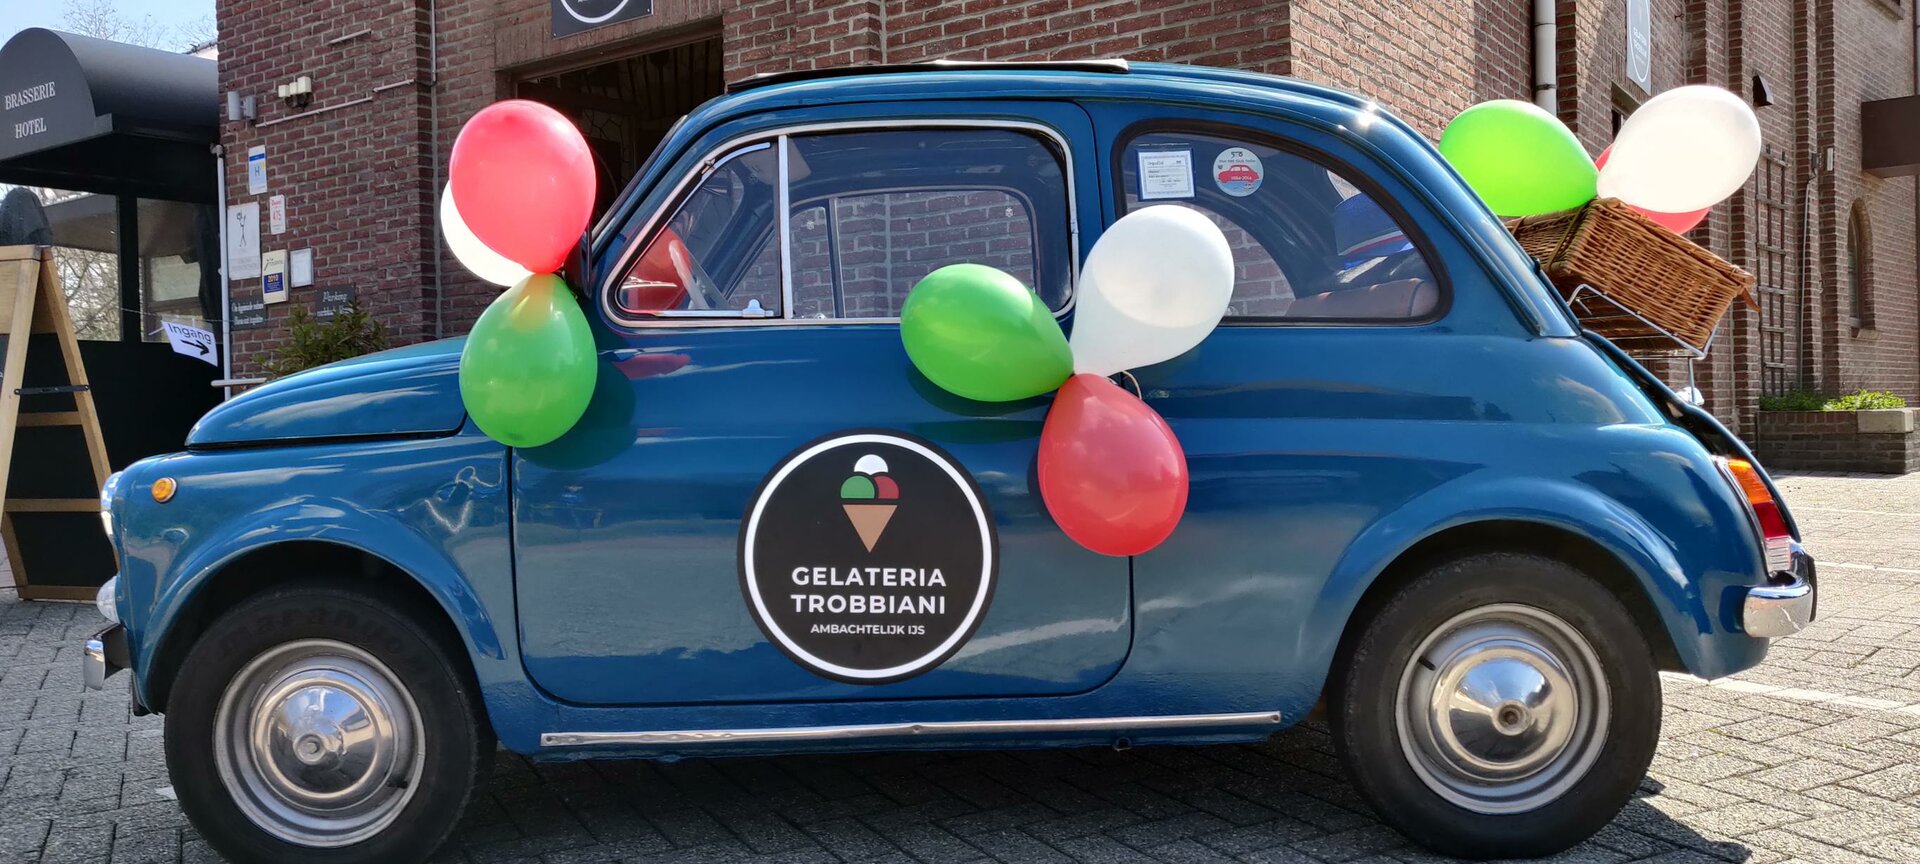 Gelateria Trobbiani - Fiat 500